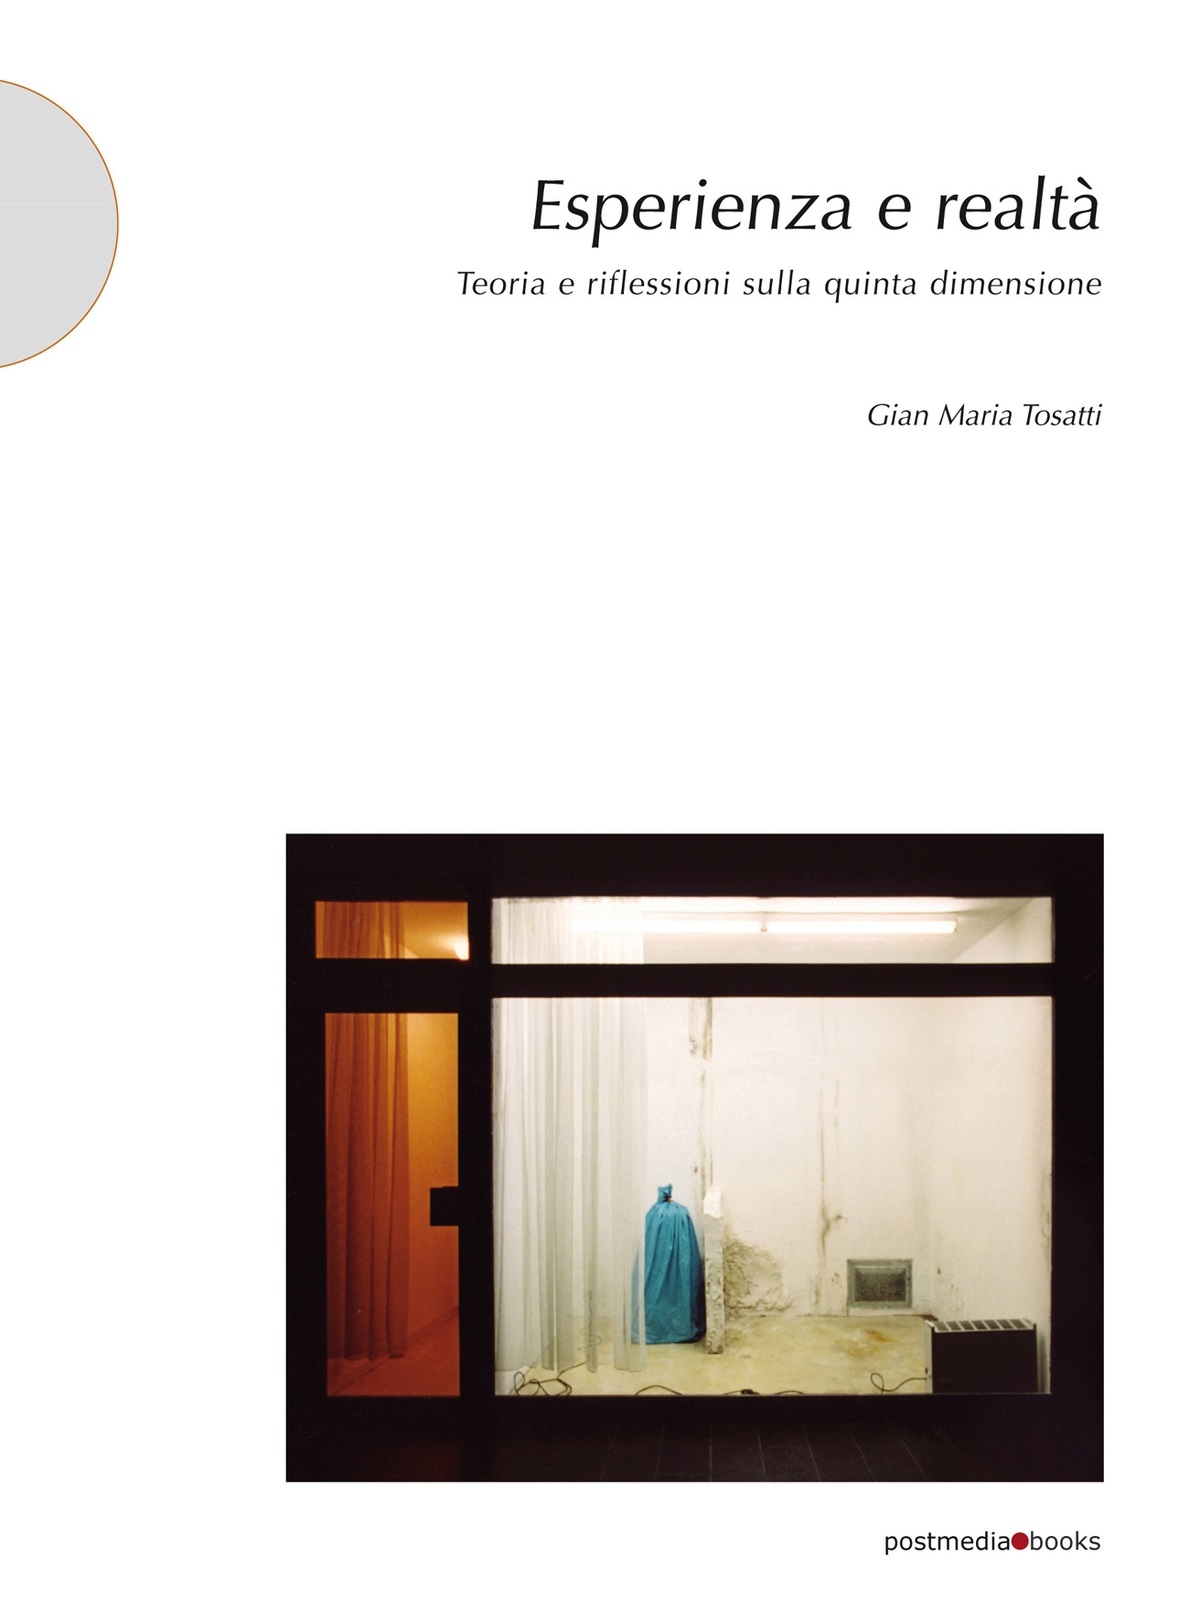 Gian Maria Tosatti – Esperienza e realtà. Teoria e riflessioni sulla quinta dimensione (Postmedia Books, Milano 2021)